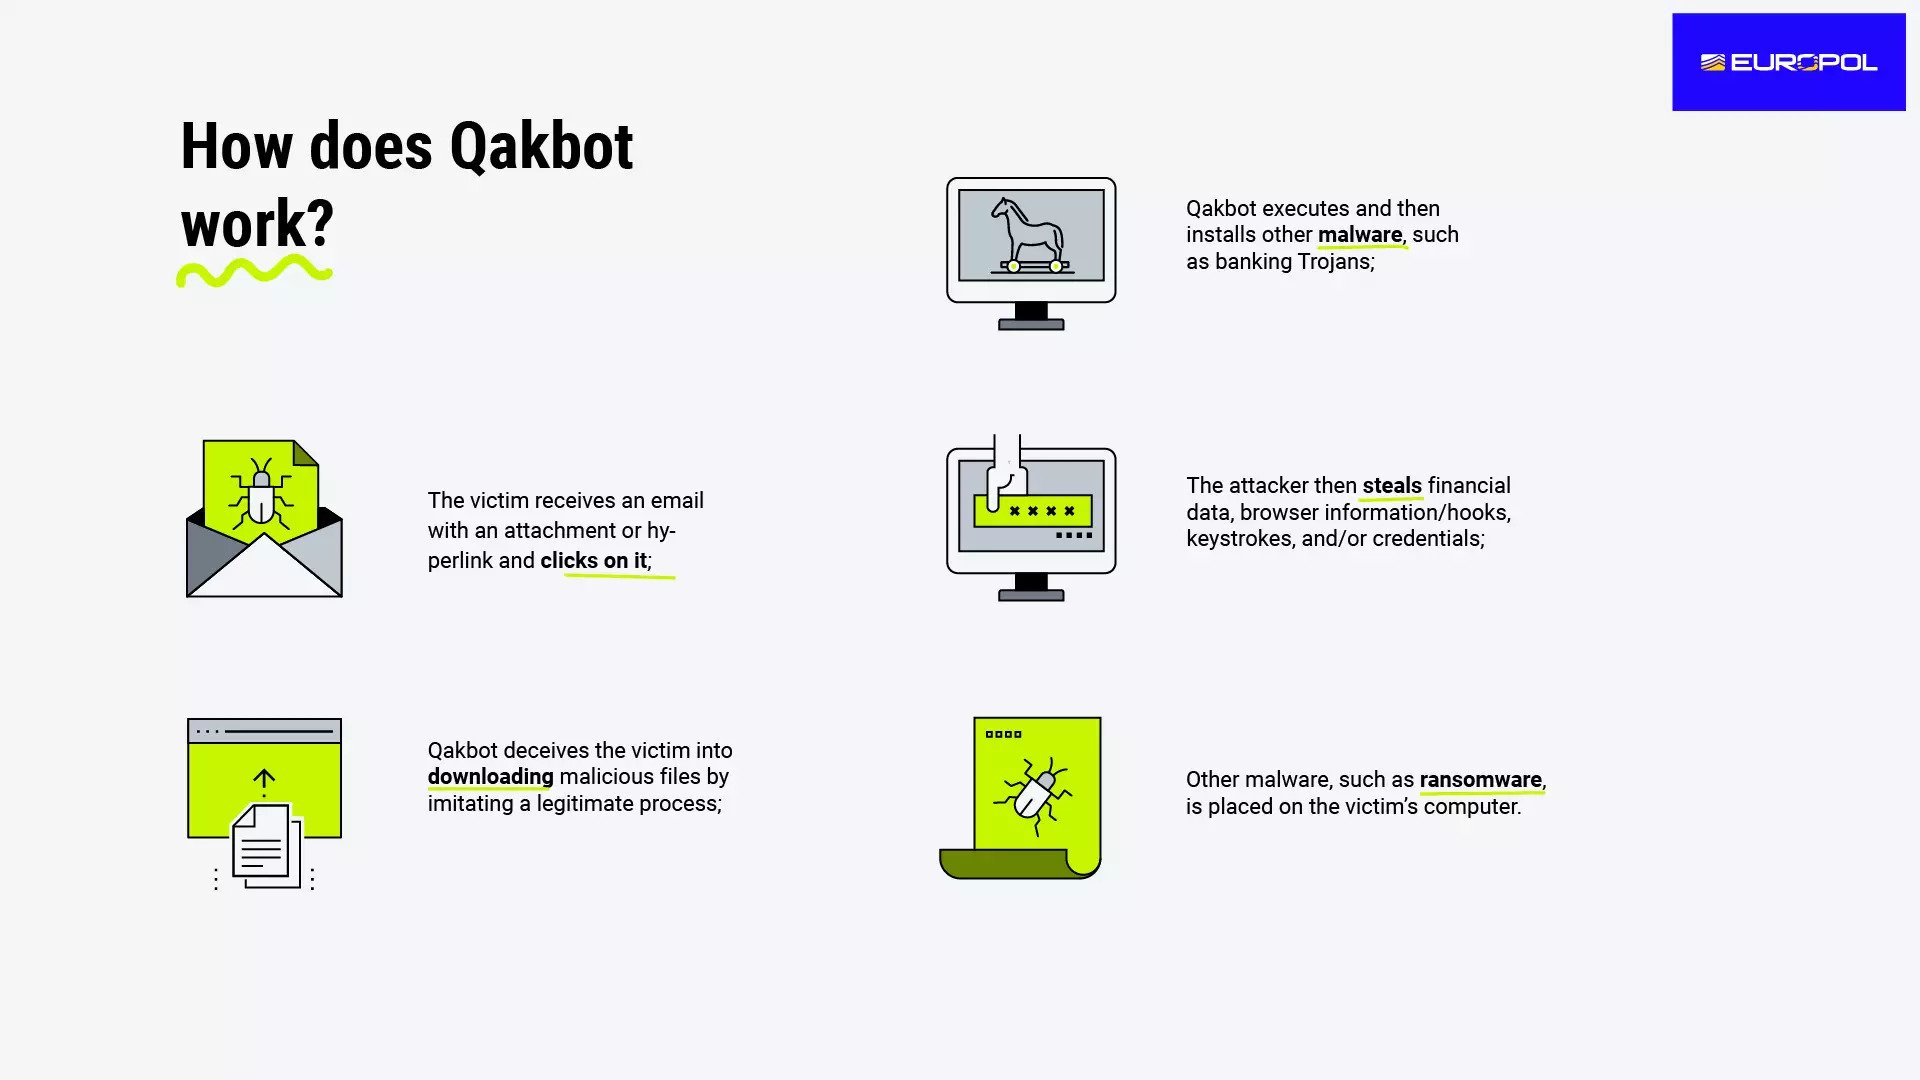 Qakbot botnet infrastructure shattered after international operation